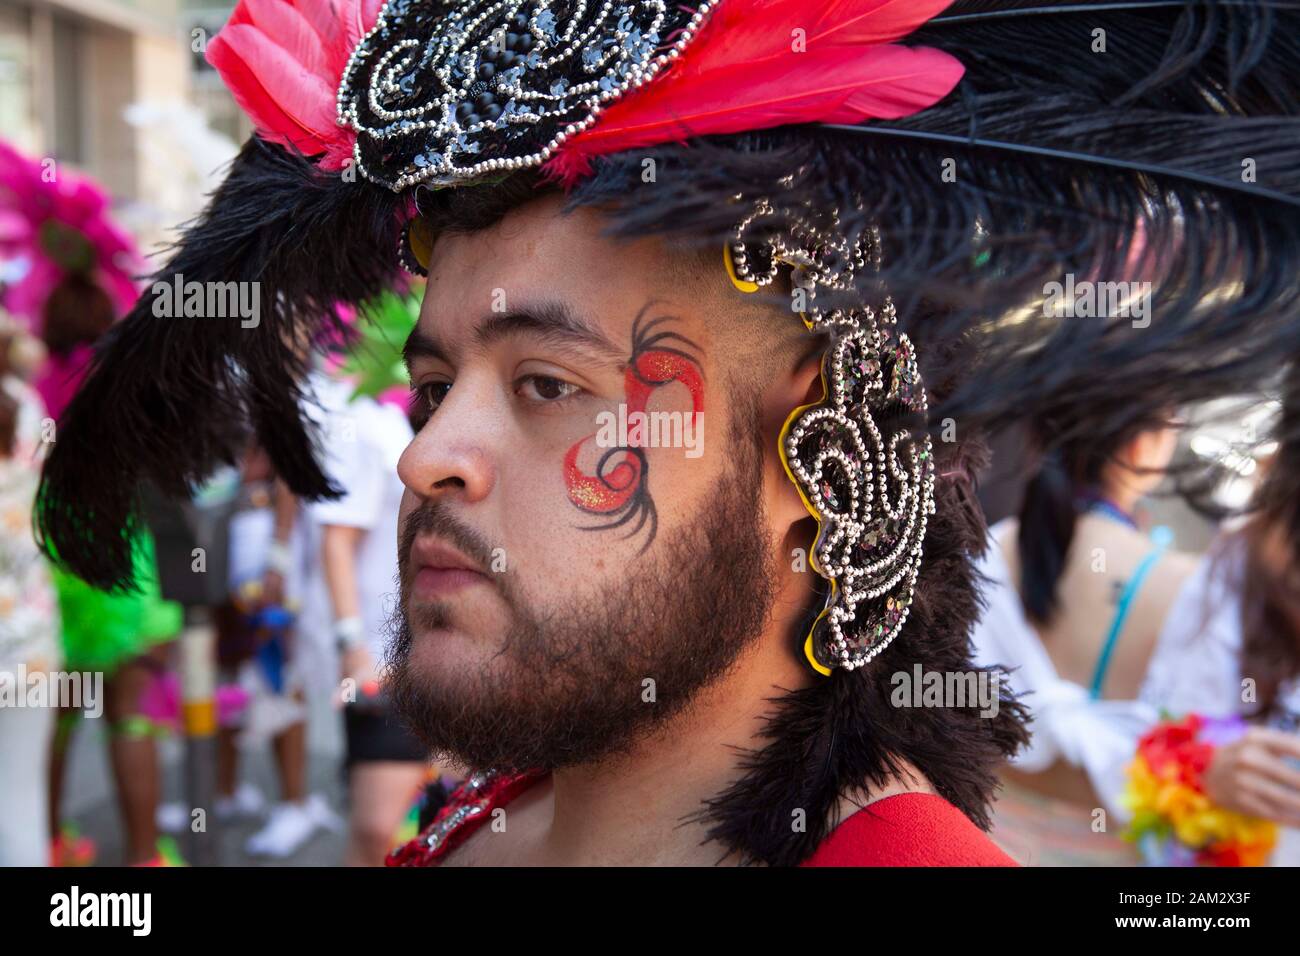 Participante del desfile de orgullo en el espectacular traje de plumas y motivos florales, Vancouver Pride Festival 2014, Vancouver, Canadá Foto de stock